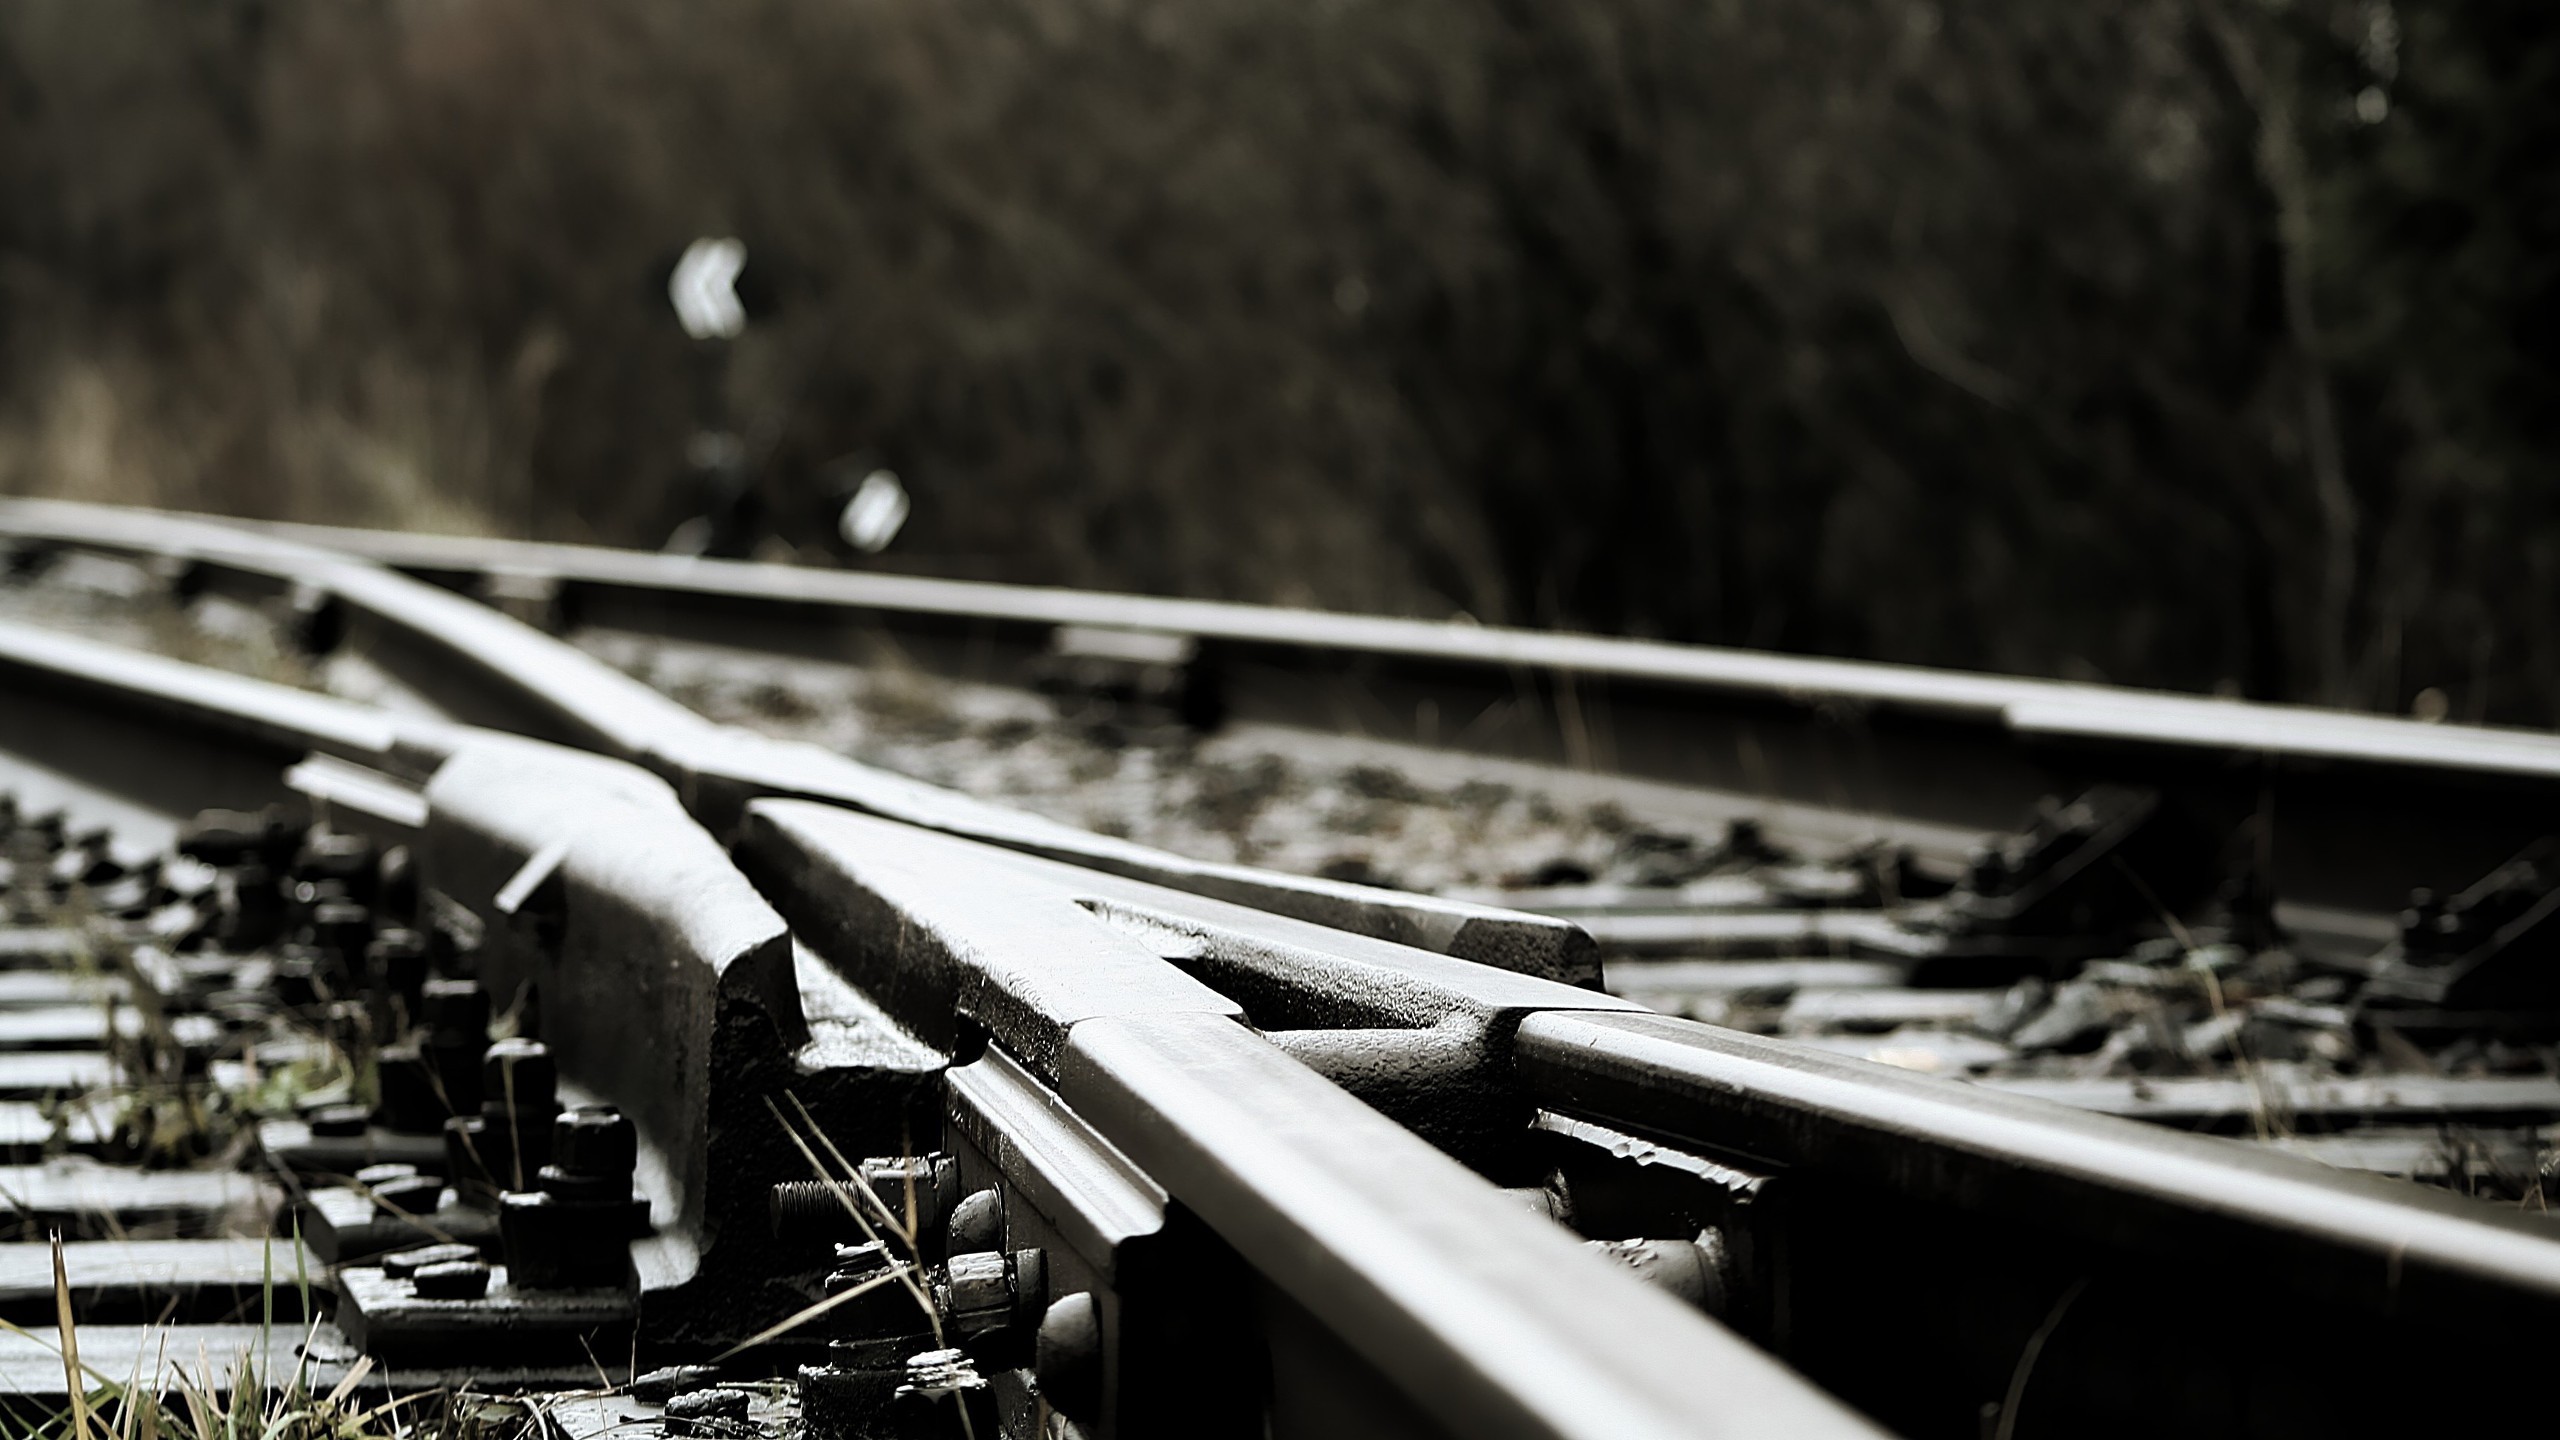 Railway Train Metal Railroad Track 2560x1440